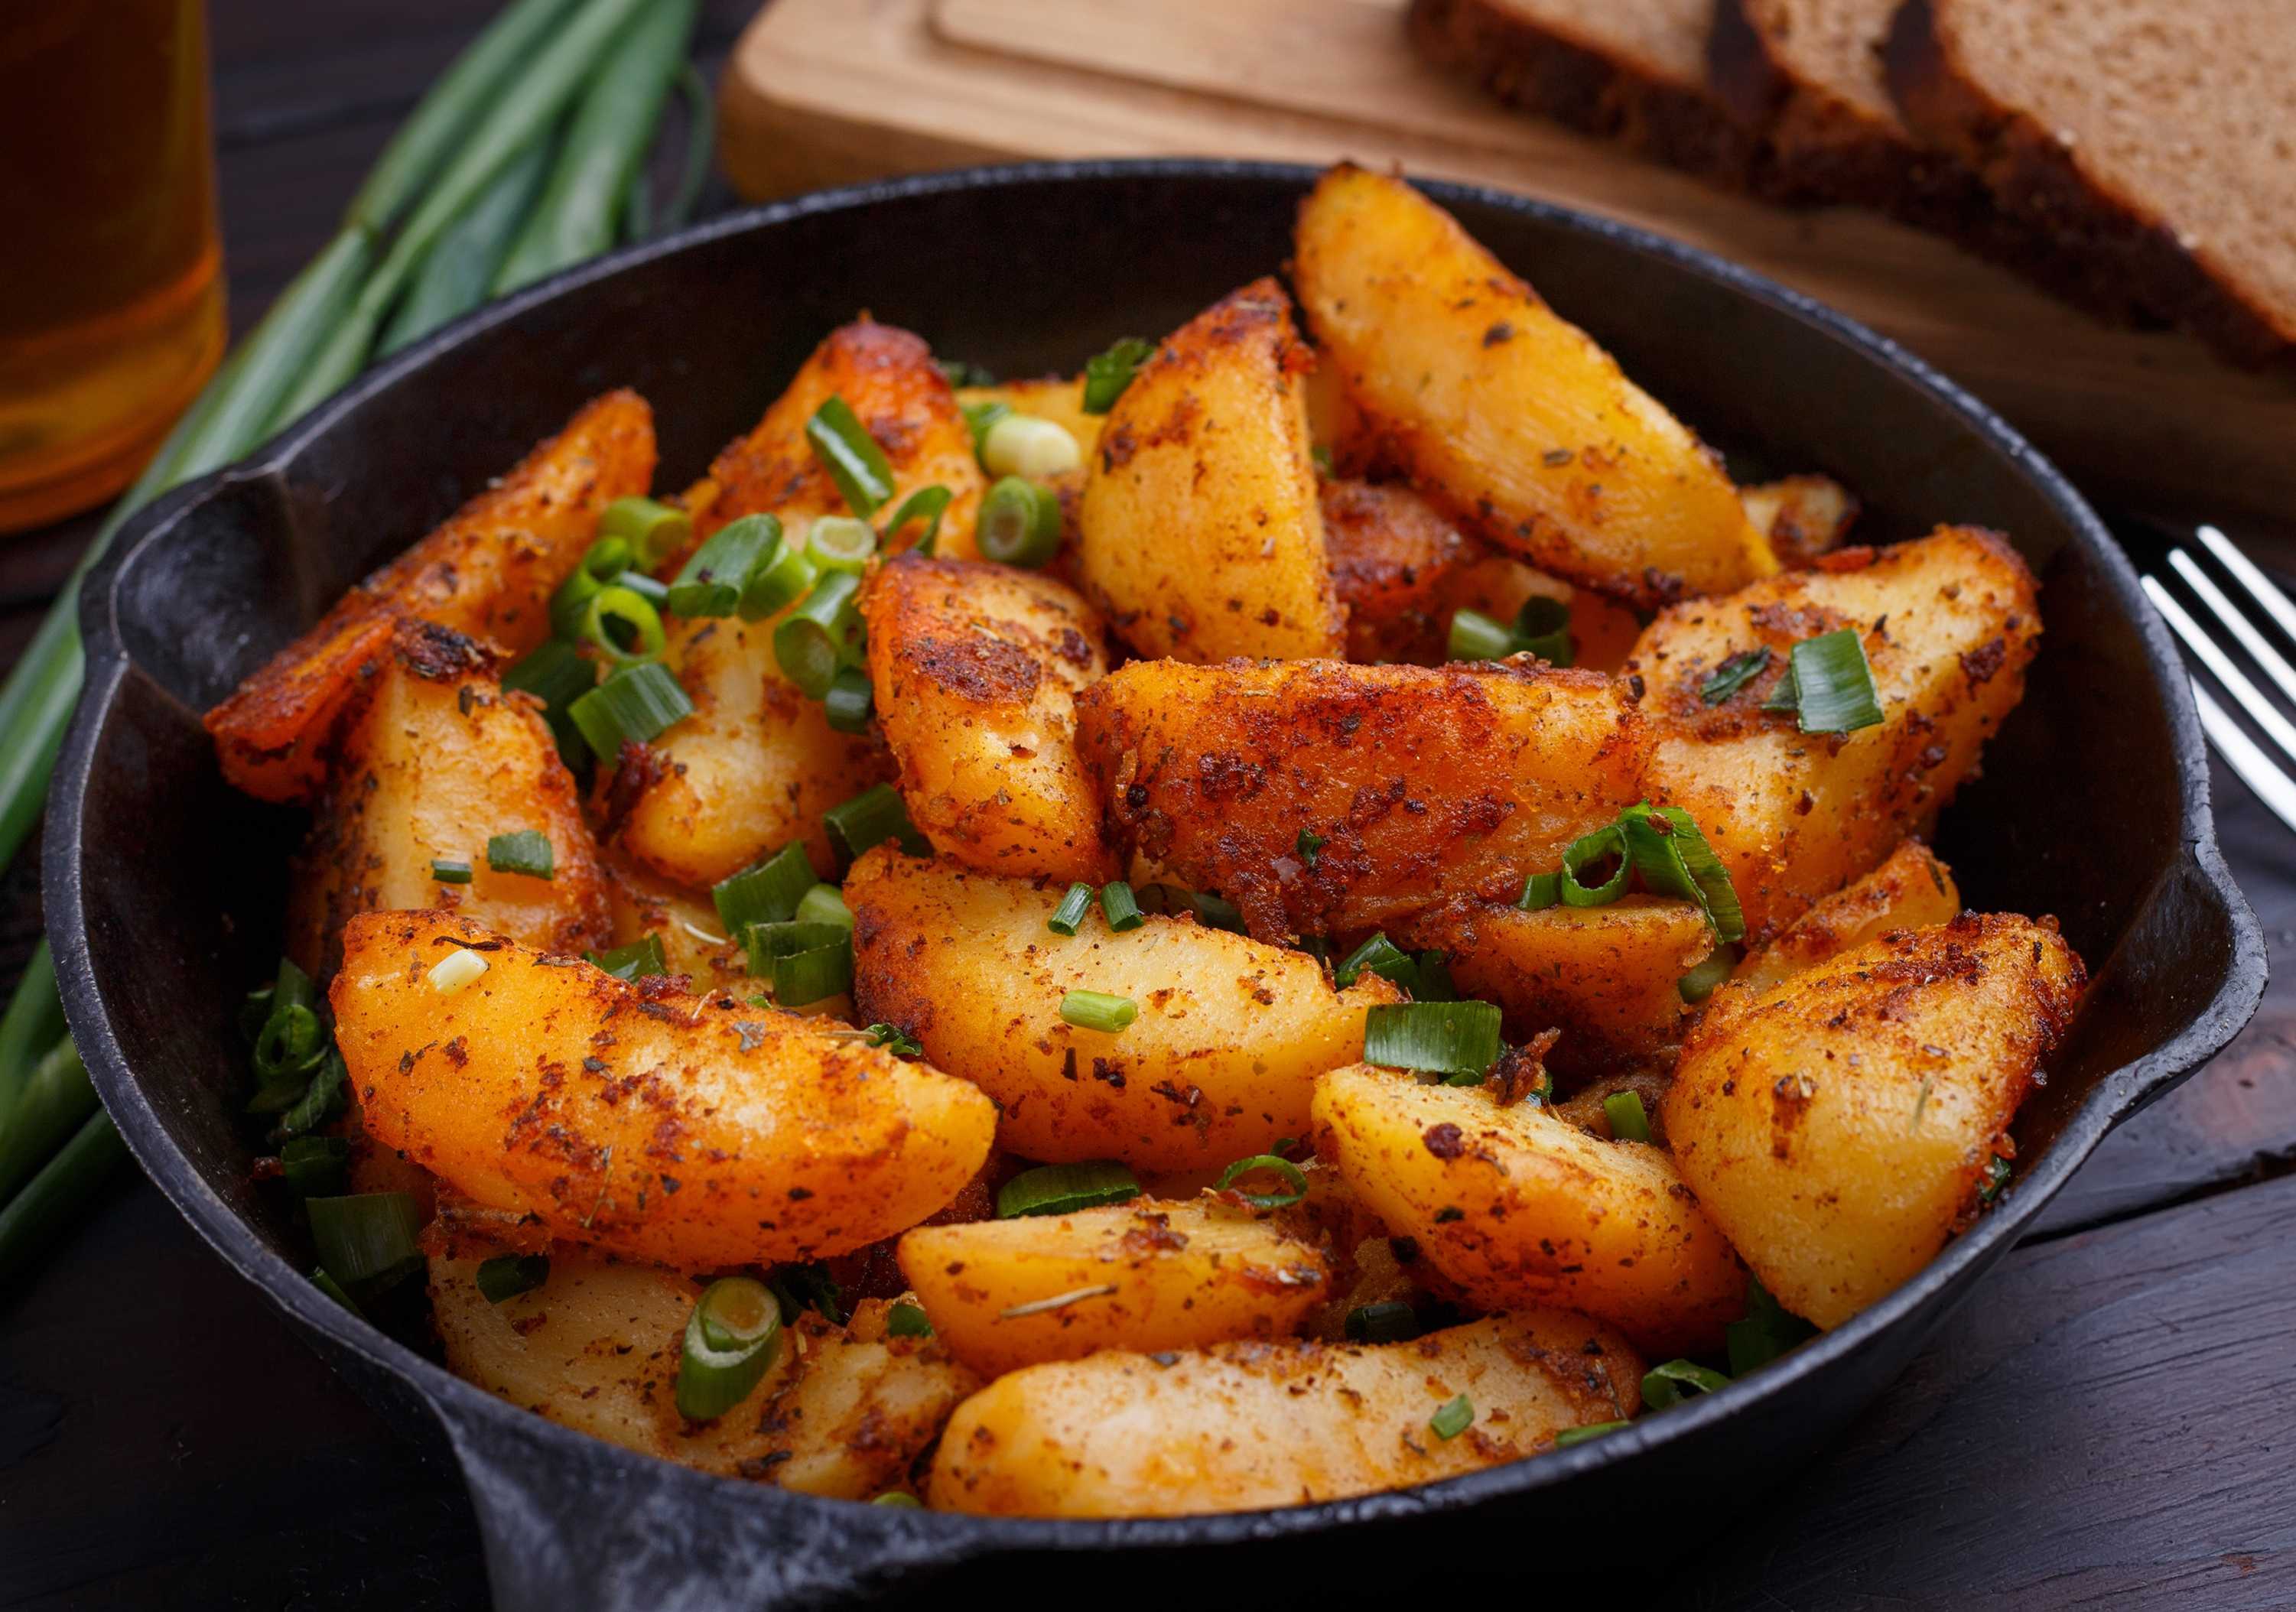 Блюда из картофеля простые рецепты